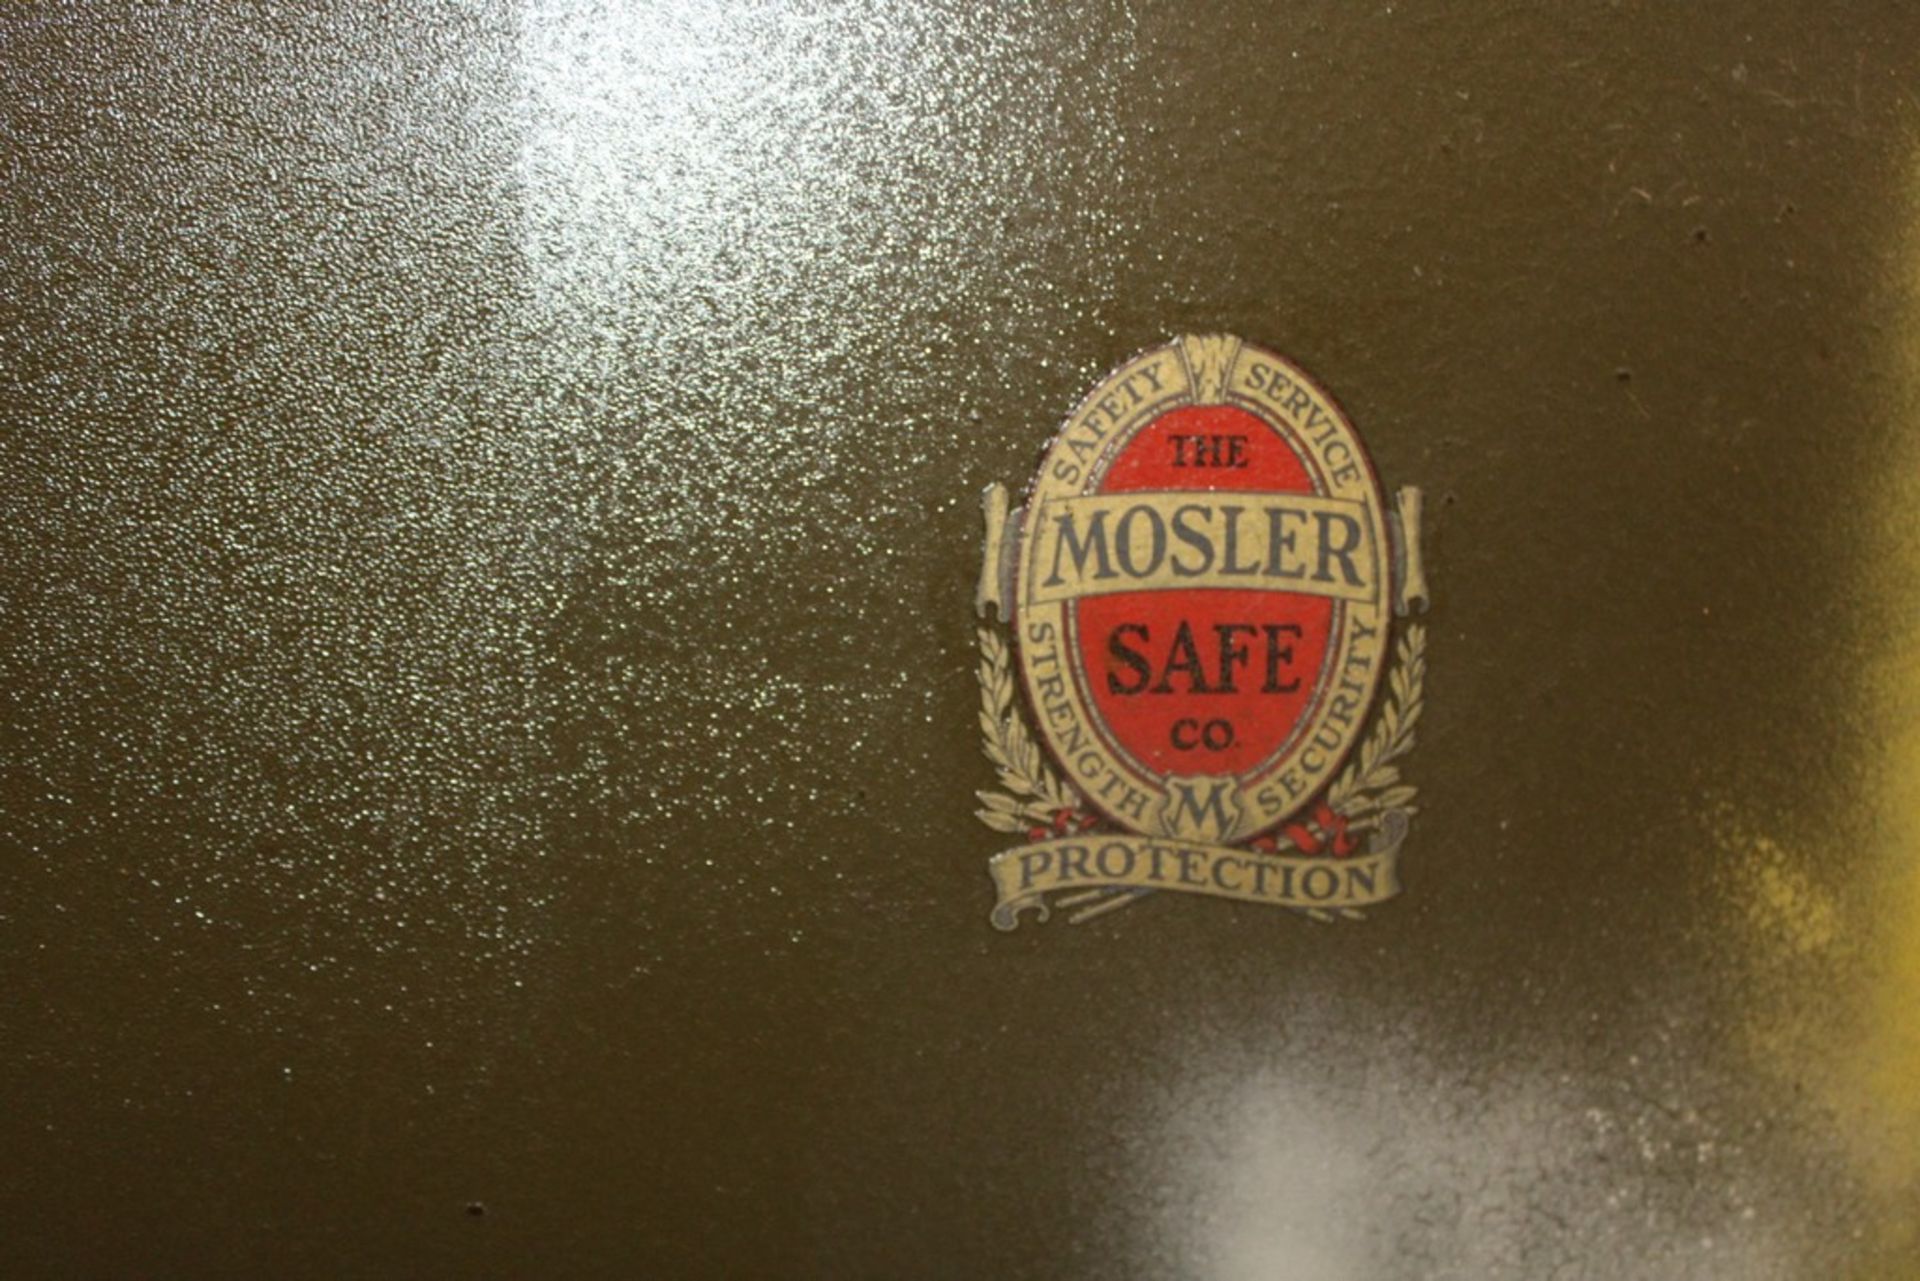 MOSLER TWO DOOR STEEL KEYED SAFE 48" X 27" X 73" - Image 3 of 4